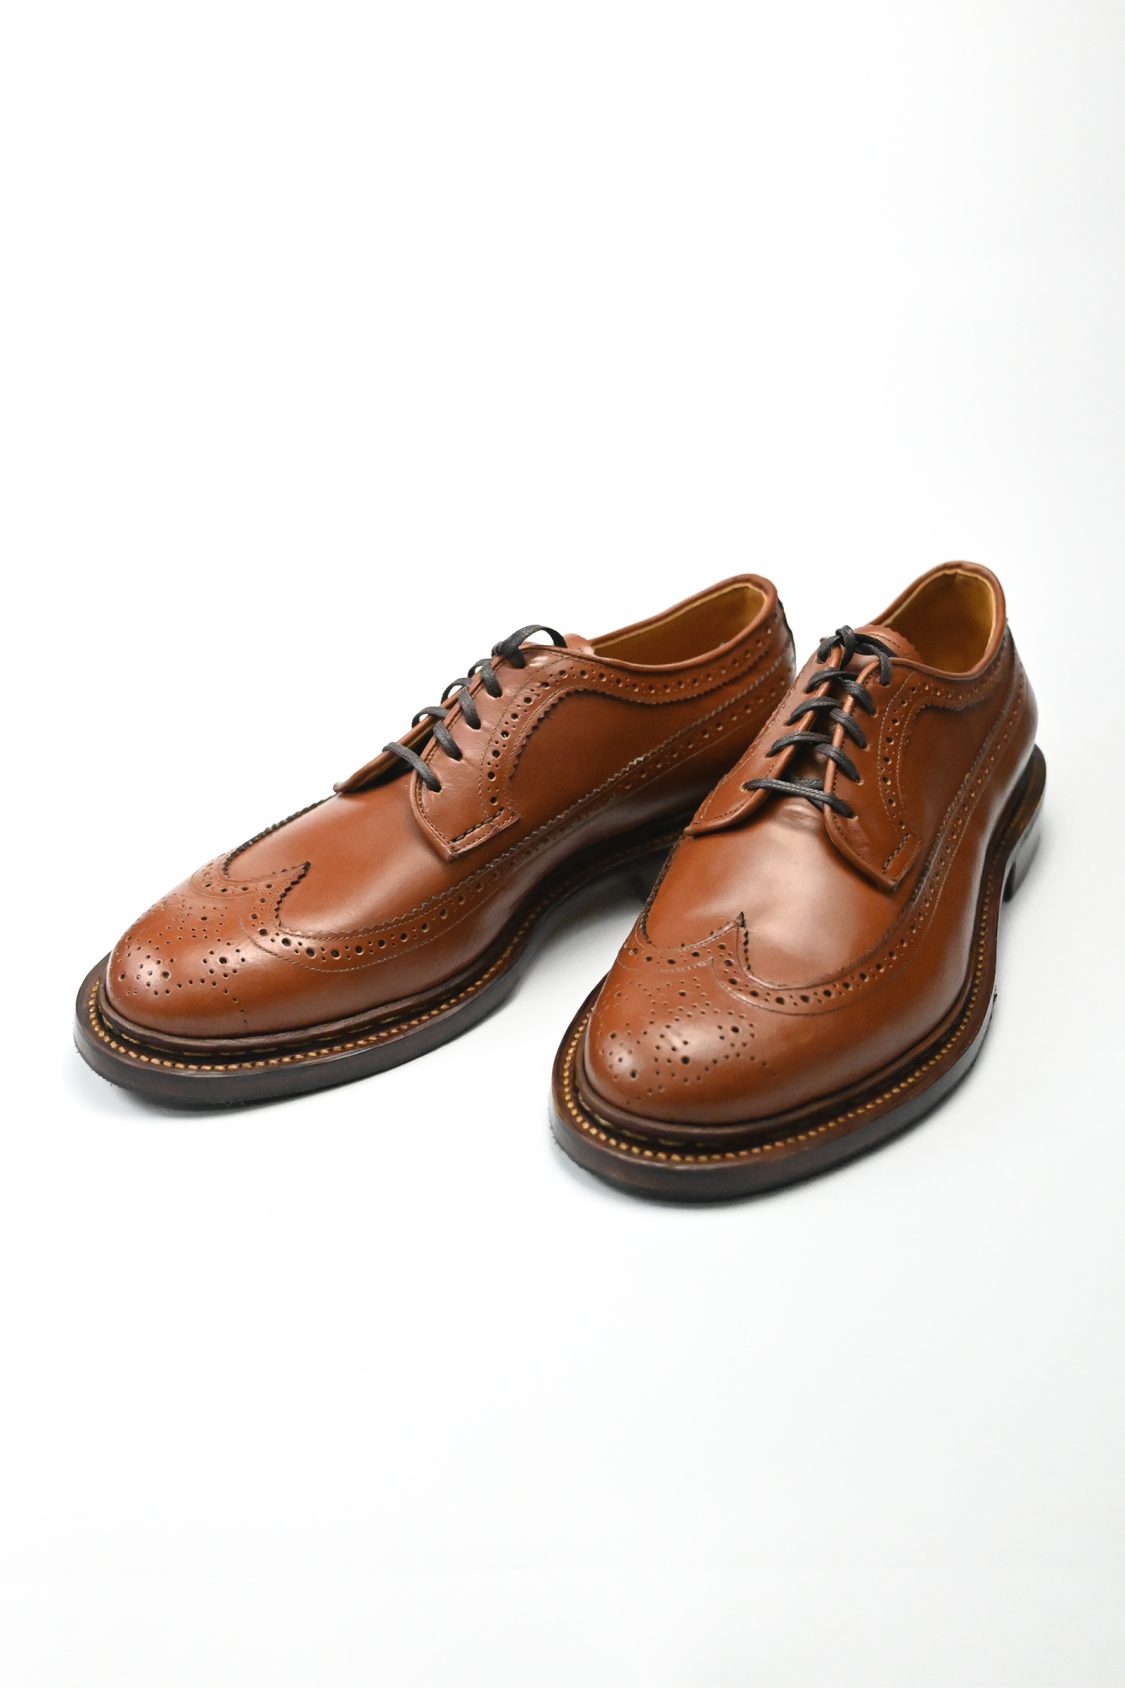 ノルウィージャン製法の革靴「FULL BROGUES-フルブローグ」│GEAR 